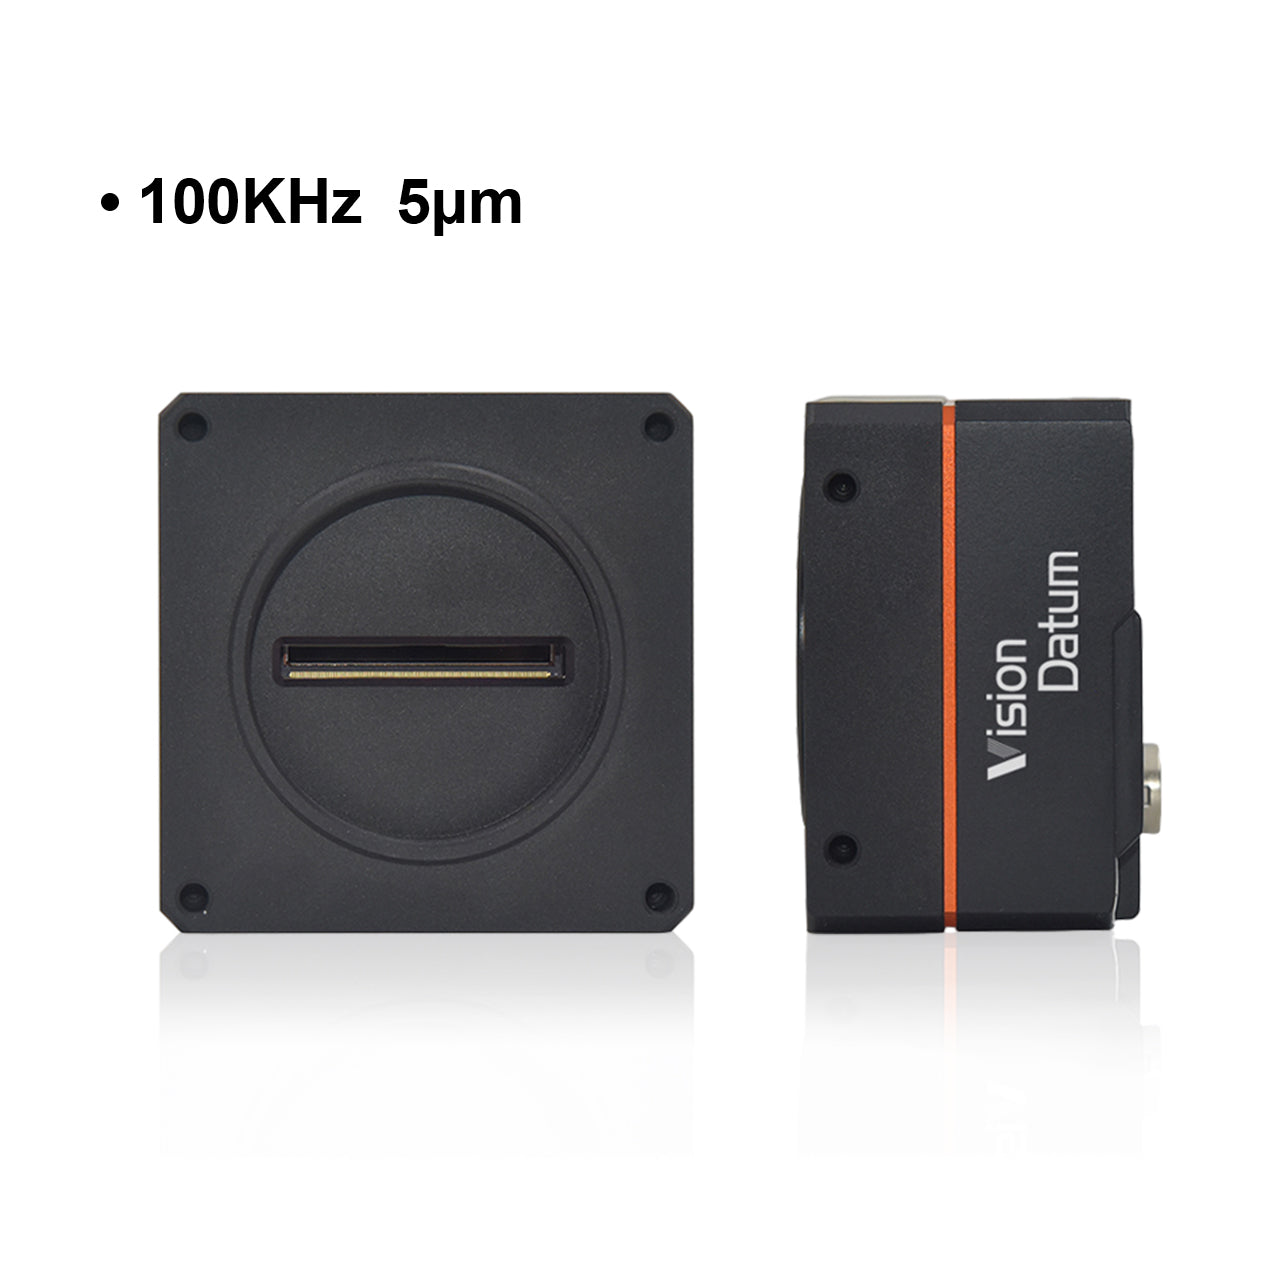 Камера линейного сканирования с креплением M72, 8K, 100 кГц, 5 мкм, CameraLink 